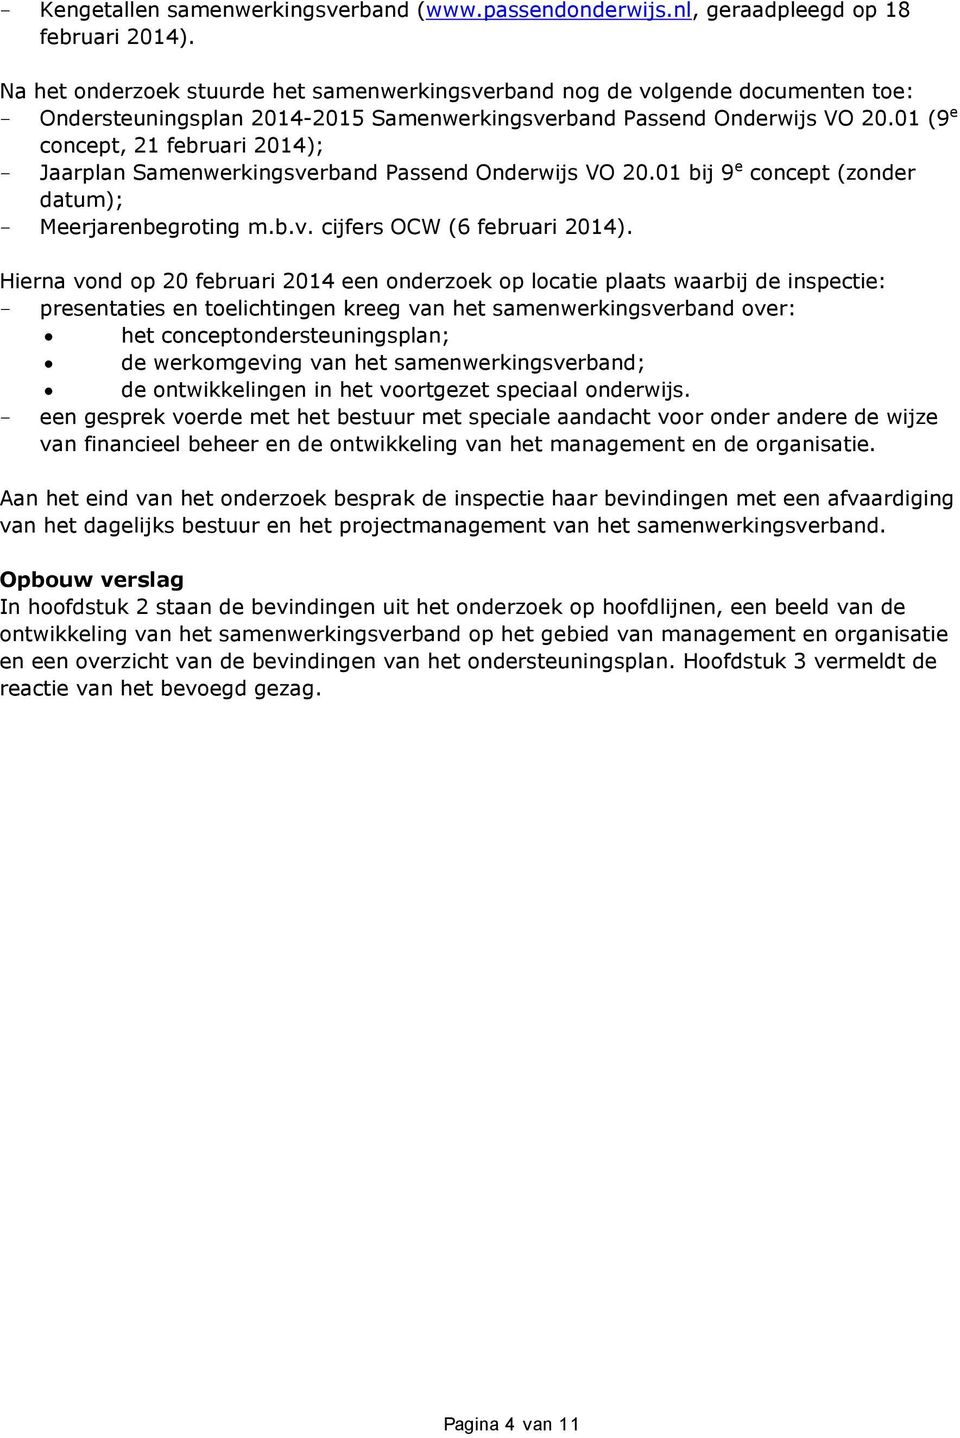 01 (9 e concept, 21 februari 2014); - Jaarplan Samenwerkingsverband Passend Onderwijs VO 20.01 bij 9 e concept (zonder datum); - Meerjarenbegroting m.b.v. cijfers OCW (6 februari 2014).